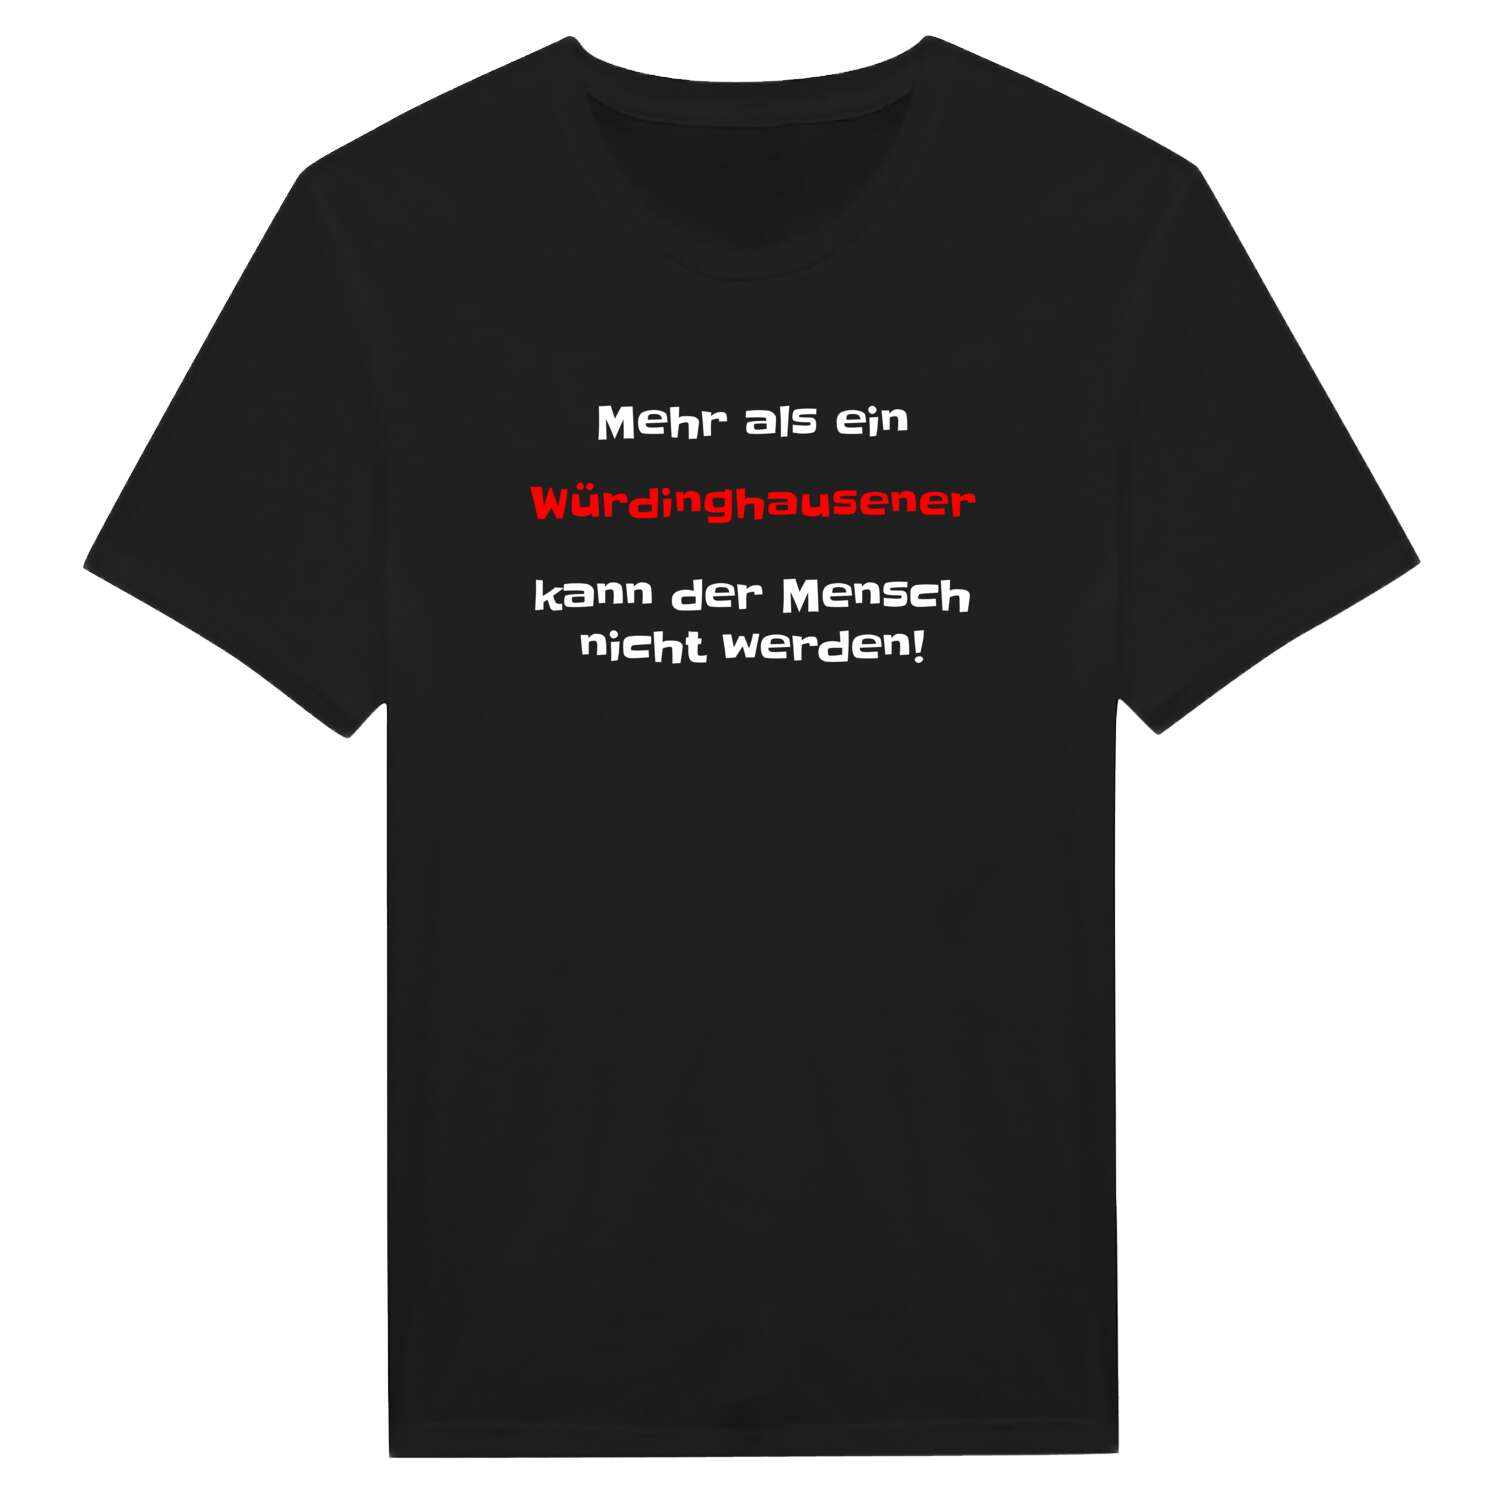 Würdinghausen T-Shirt »Mehr als ein«